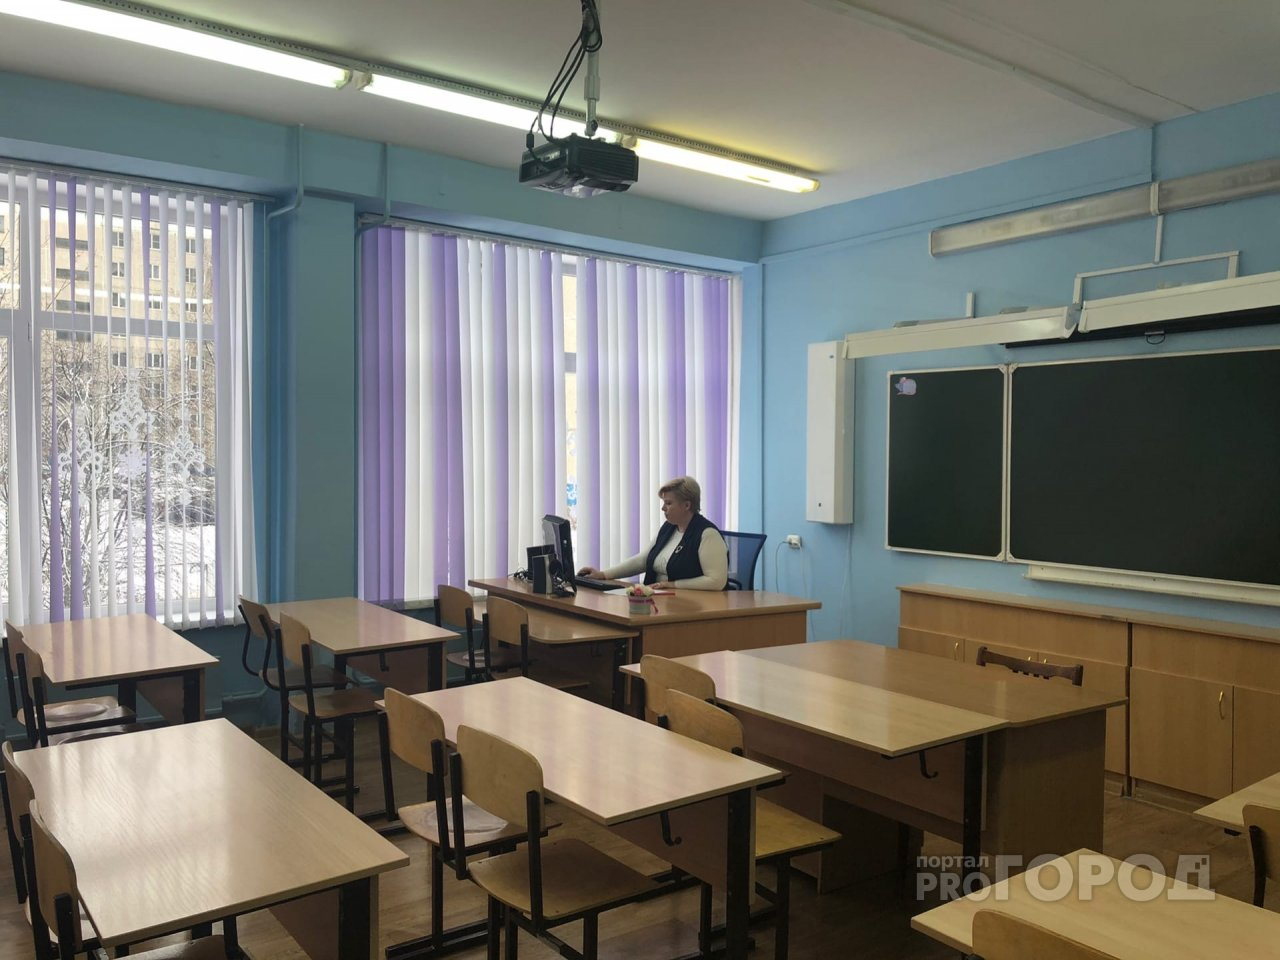 Ладыков отменил занятия во всех начальных школах Чебоксар